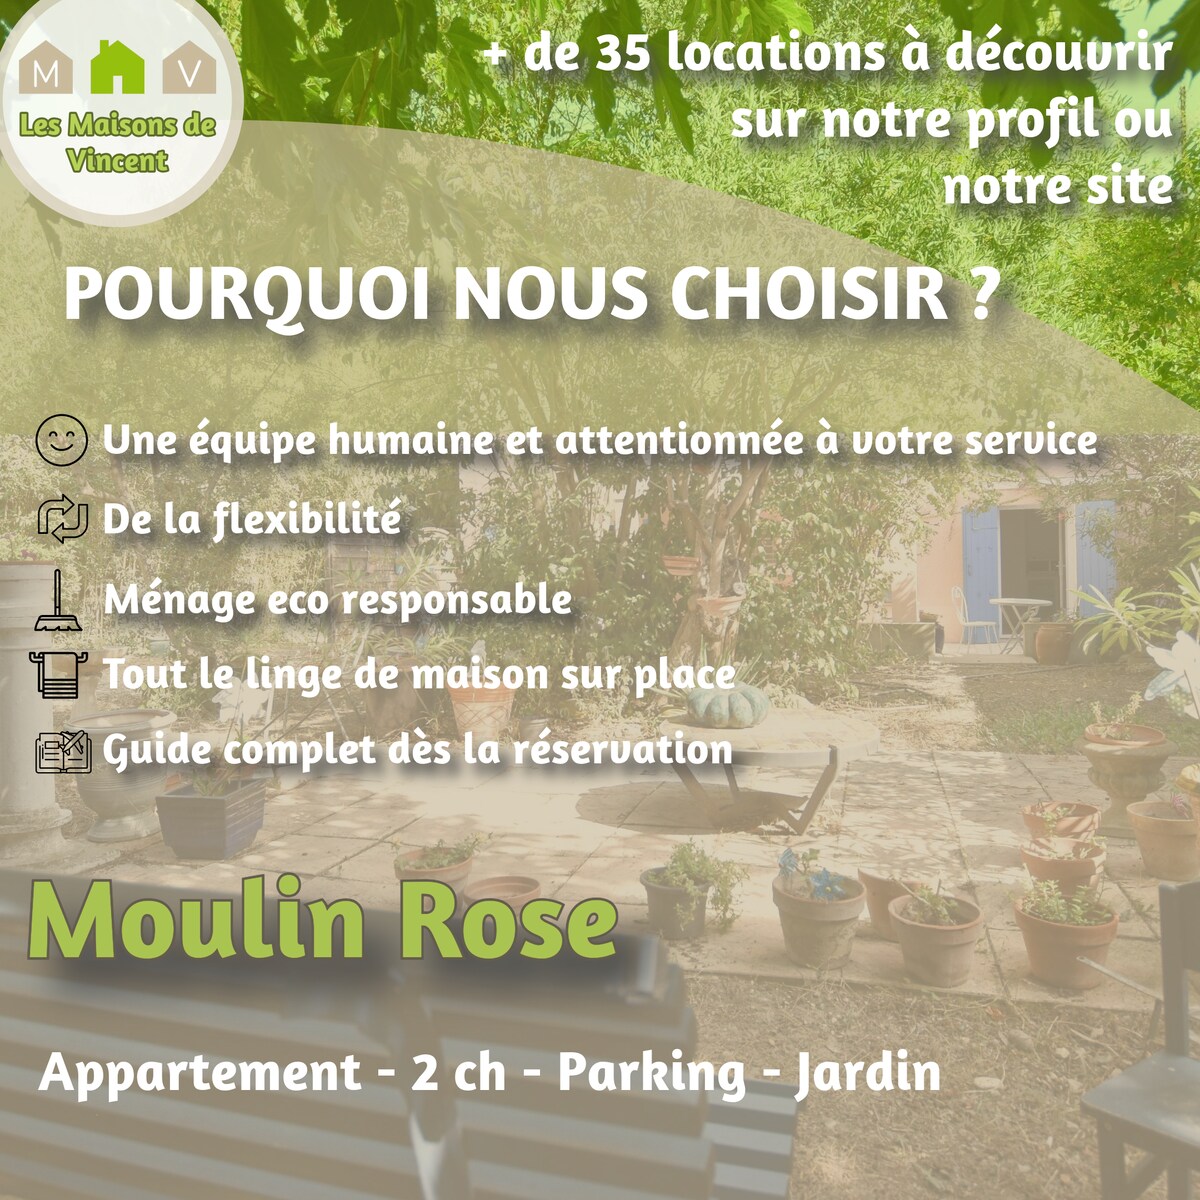 Moulin Rose、花园和停车场